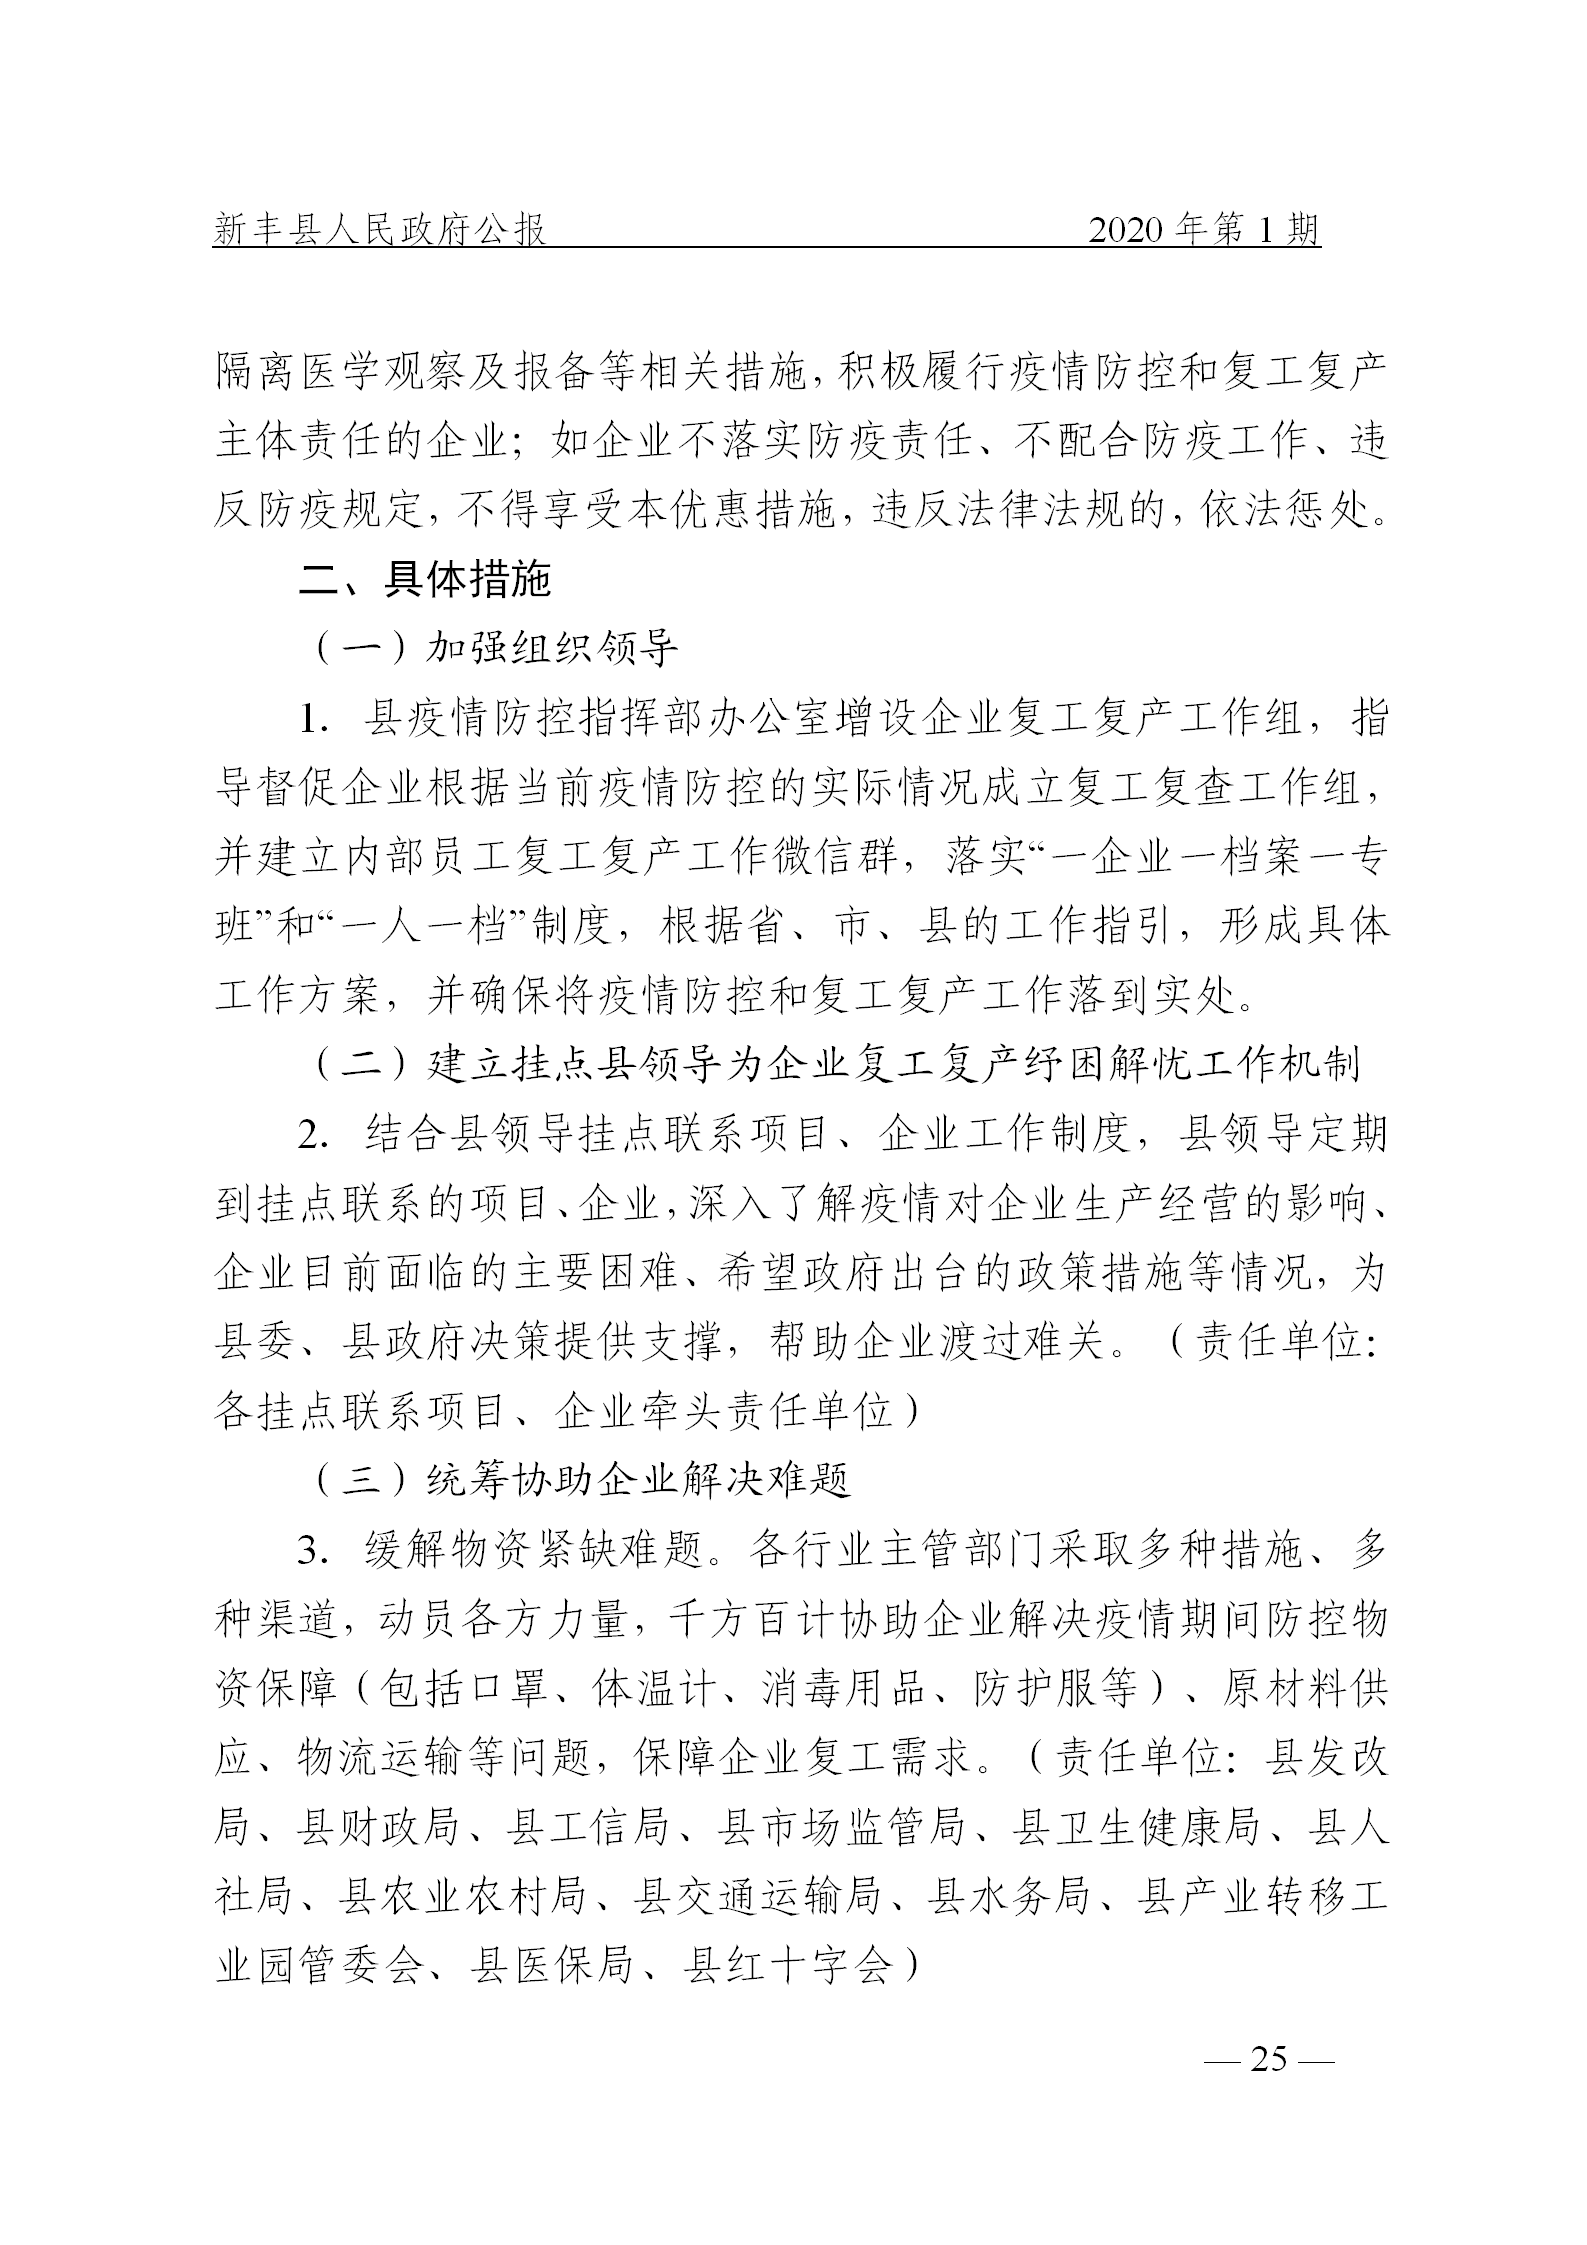 《新丰县人民政府公报》2020年第1期(1)_25.png